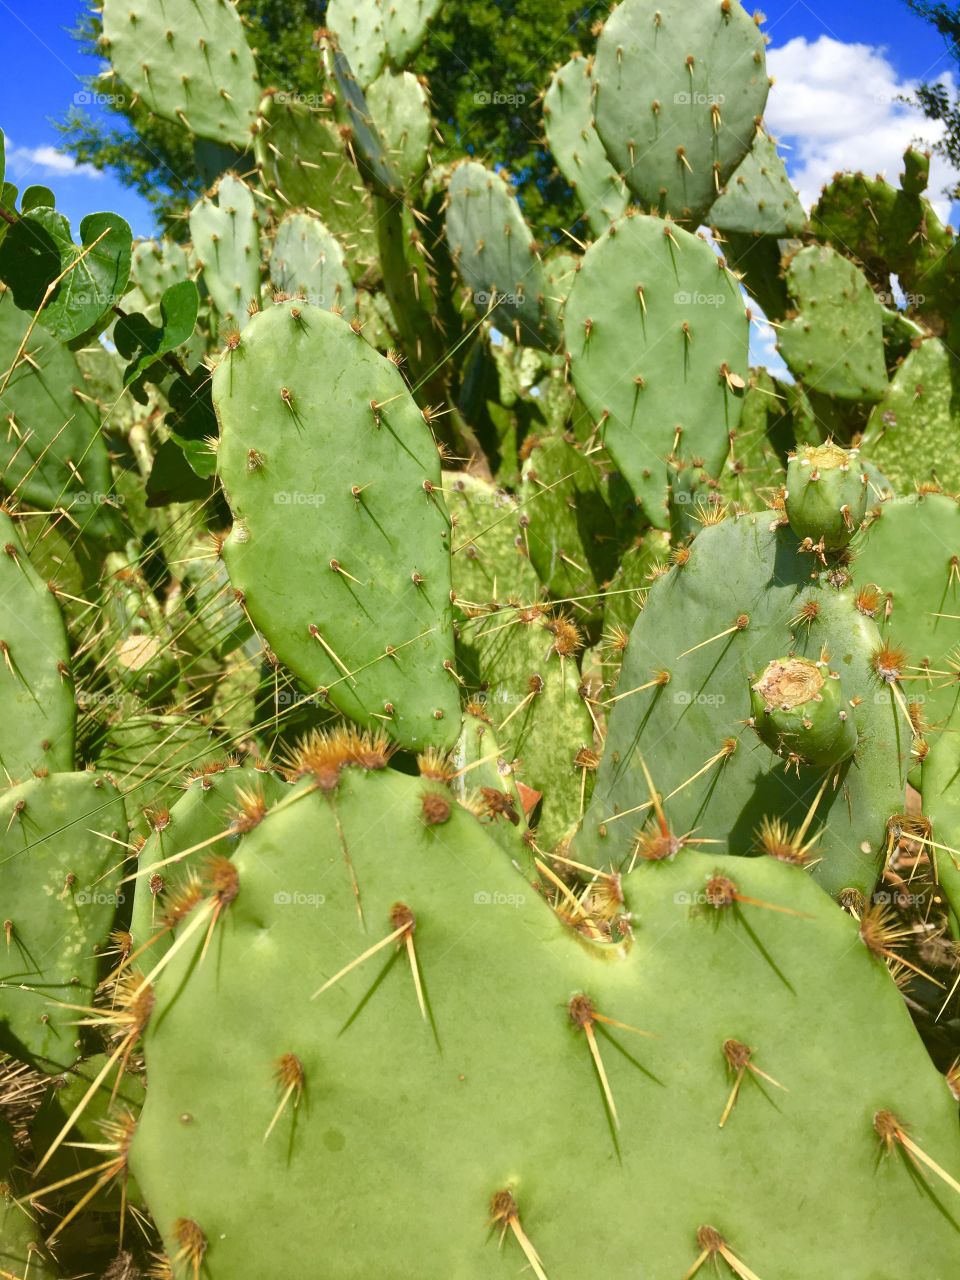 Cactus, Succulent, Desert, Spine, Prickly